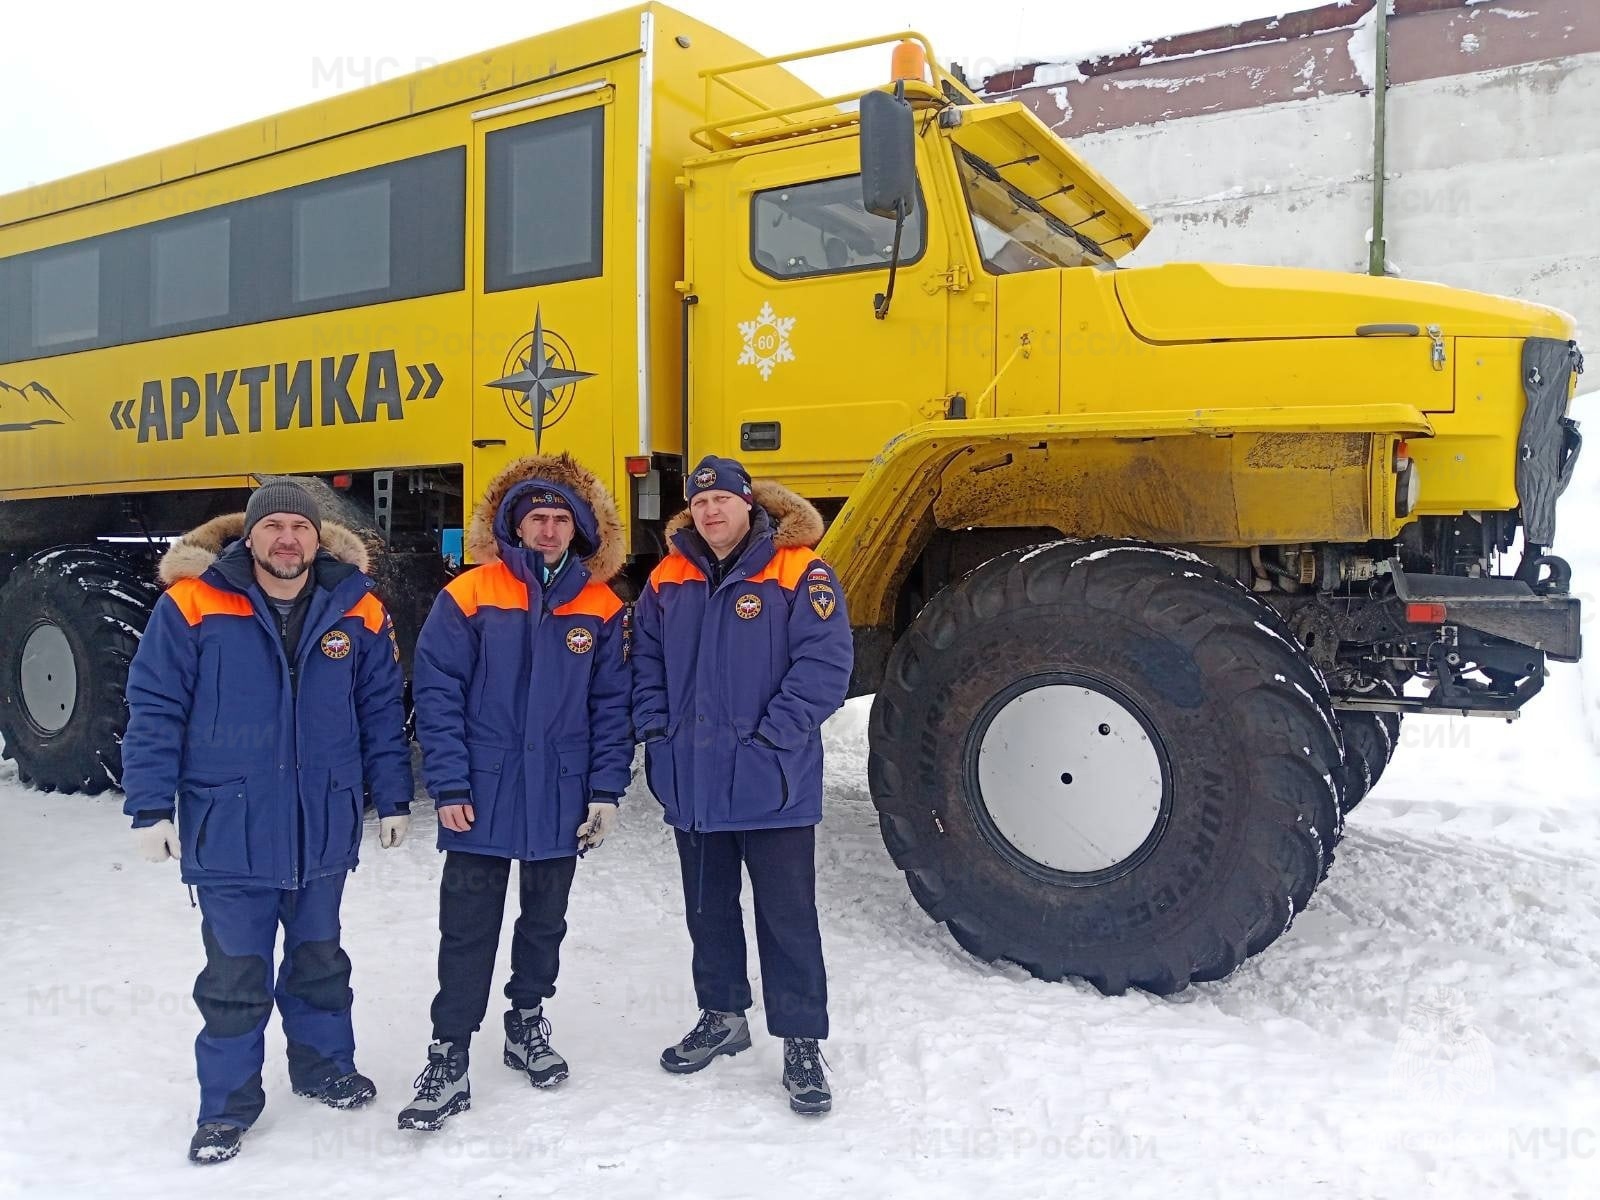 Нижегородские спасатели отправились покорять Арктику